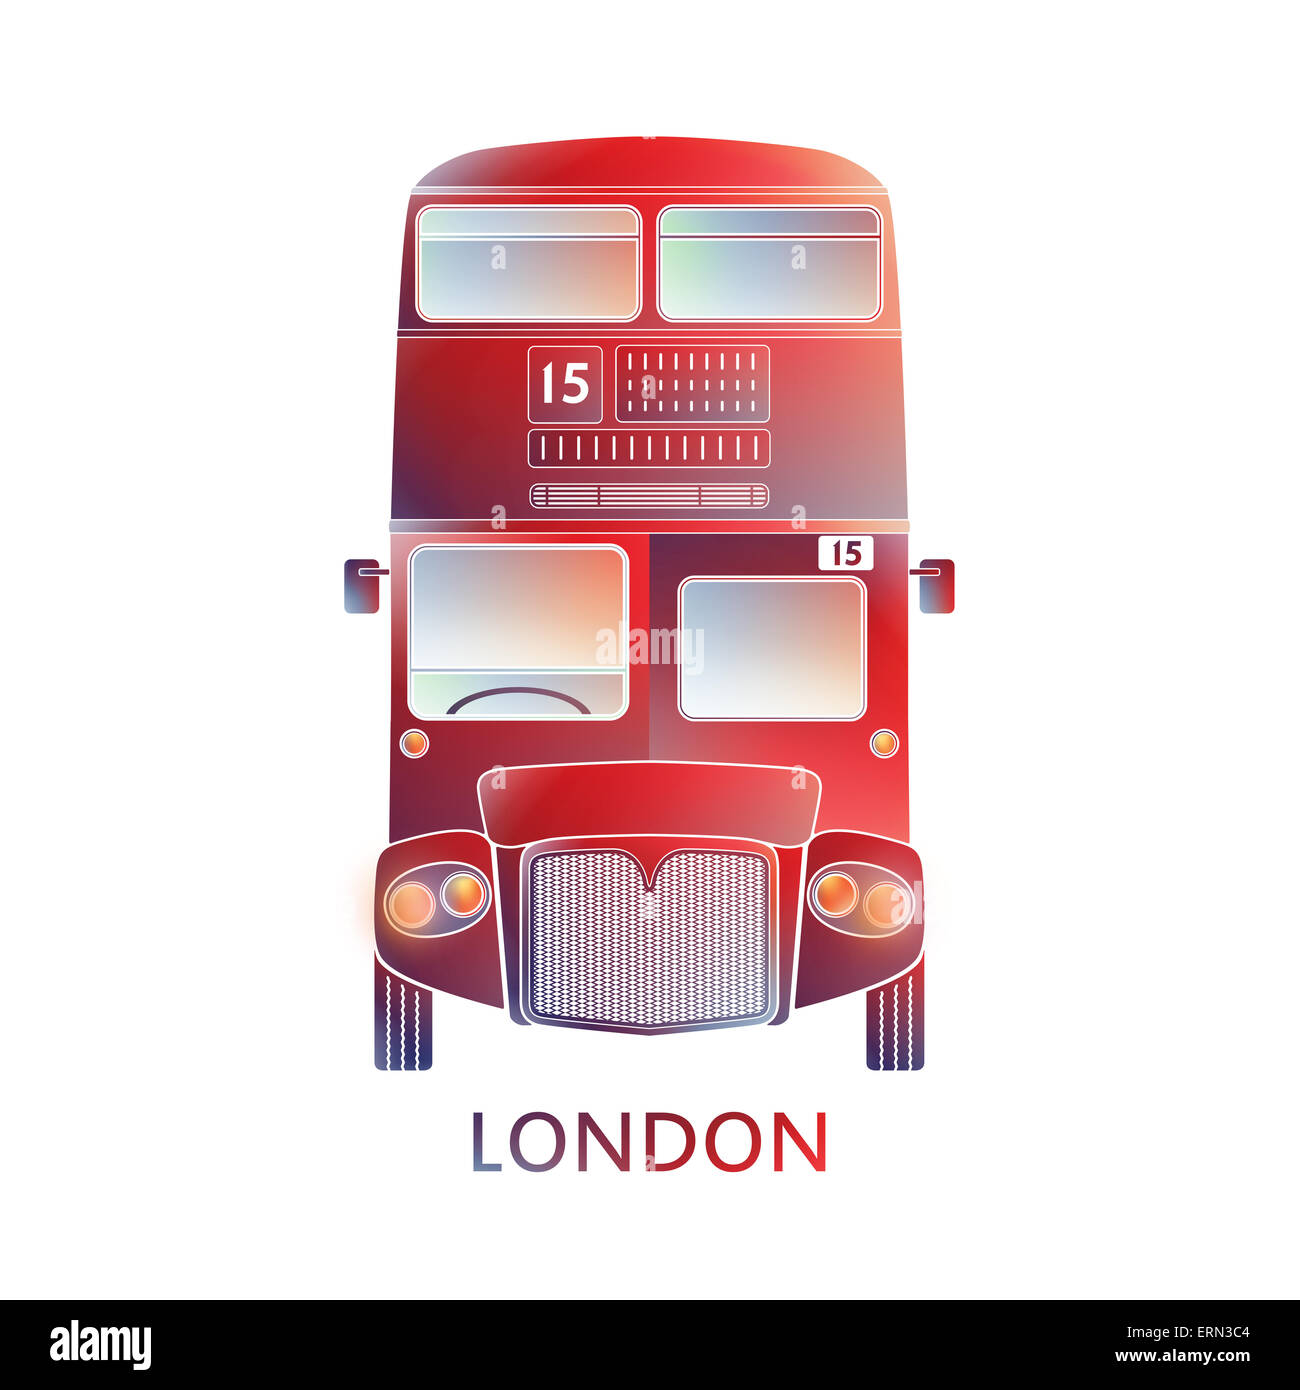 Simbolo di Londra - bus rosso icona - grafica colorata - design moderno. llustration semplificato, info - grafica, stile silhouette Foto Stock